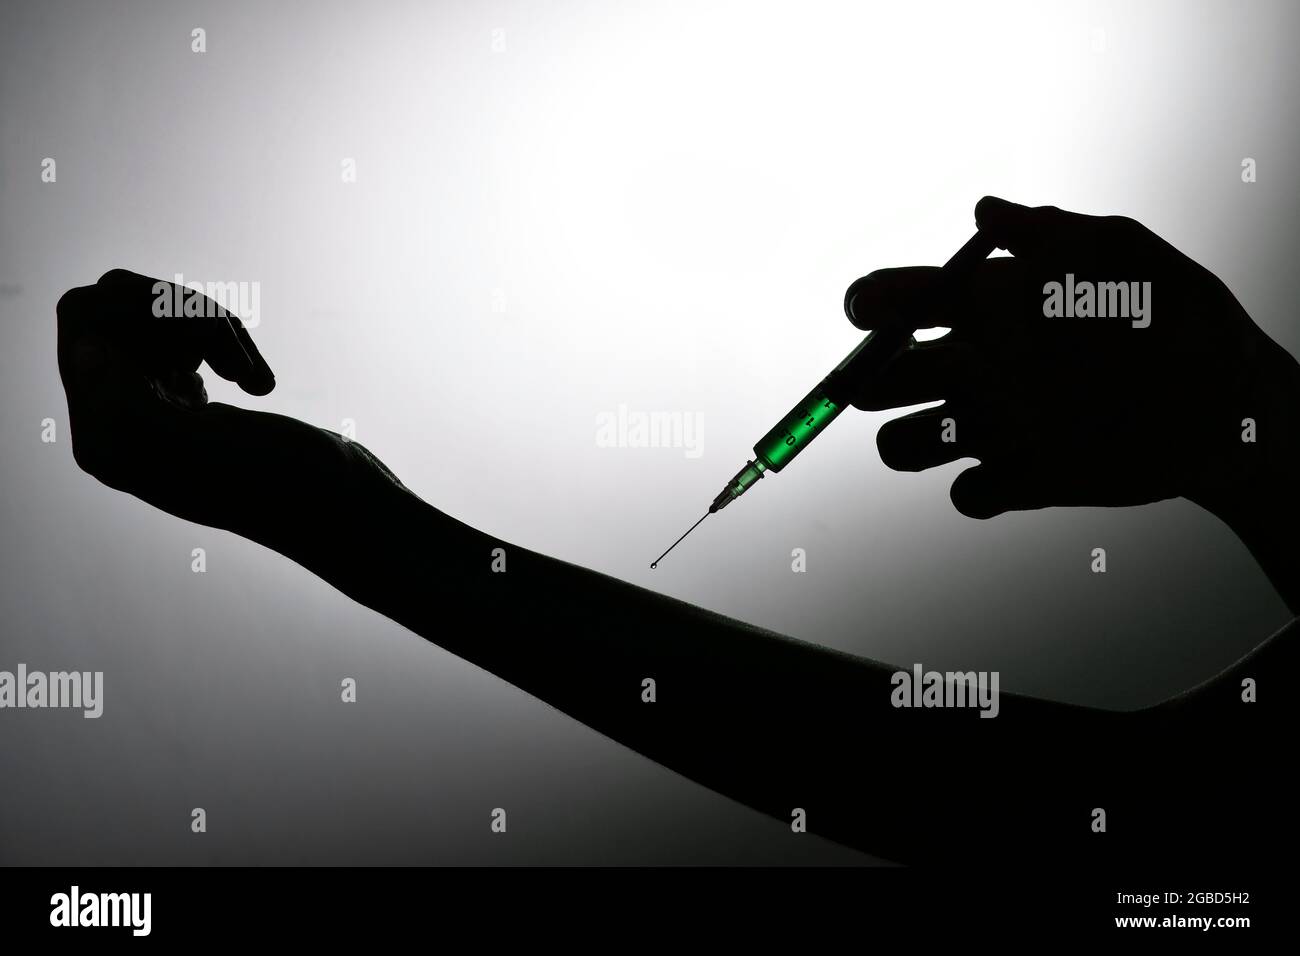 Inyectando la droga en mano, concepto de la adicción a la droga Foto de stock